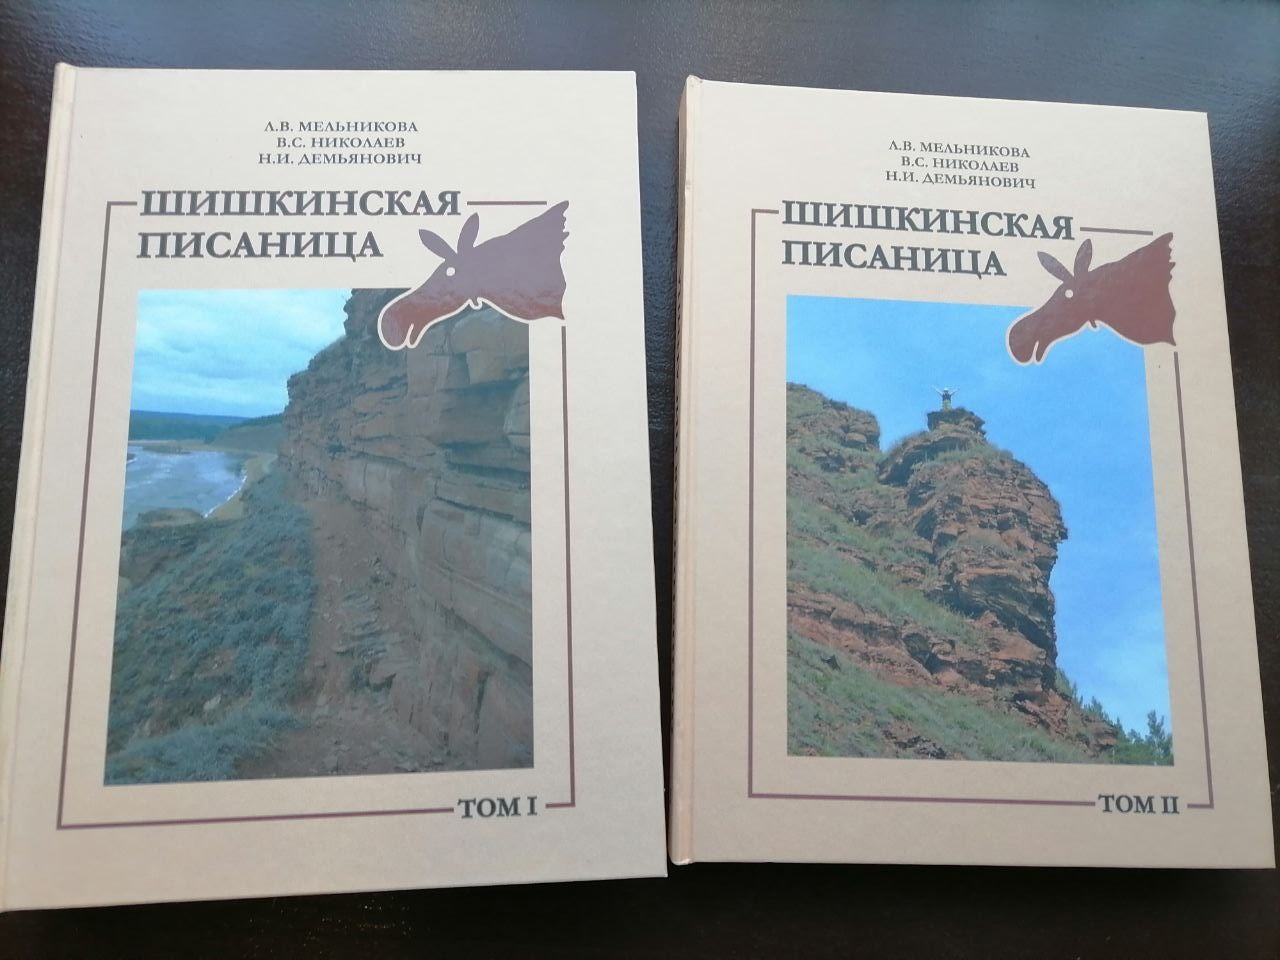 Издание “Шишкинская писаница” теперь можно купить в кассах отделов музея